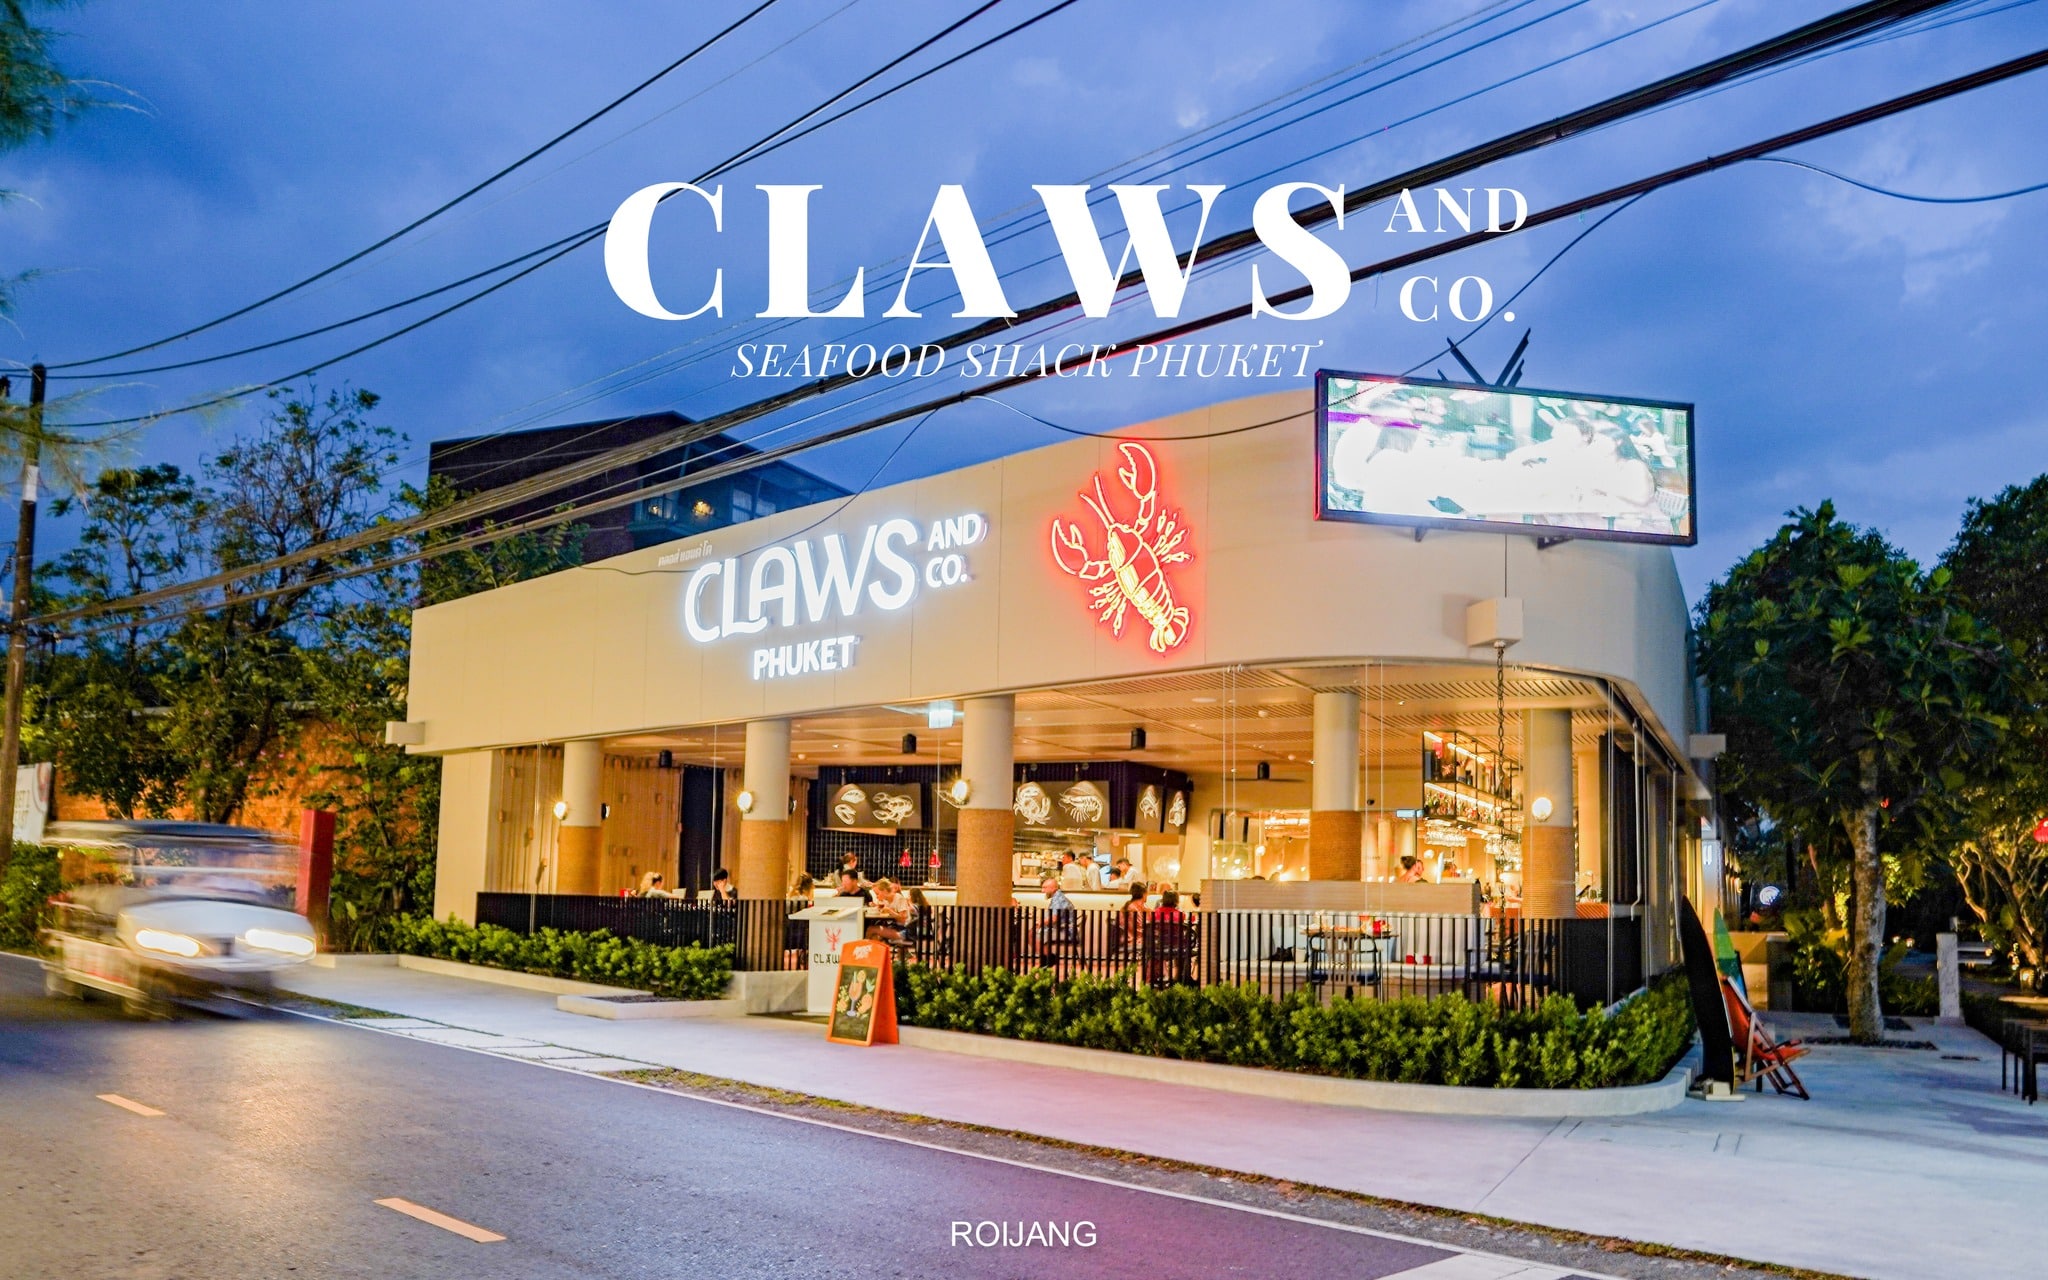 Claws and Co Phuket ร้านอาหารภูเก็ต